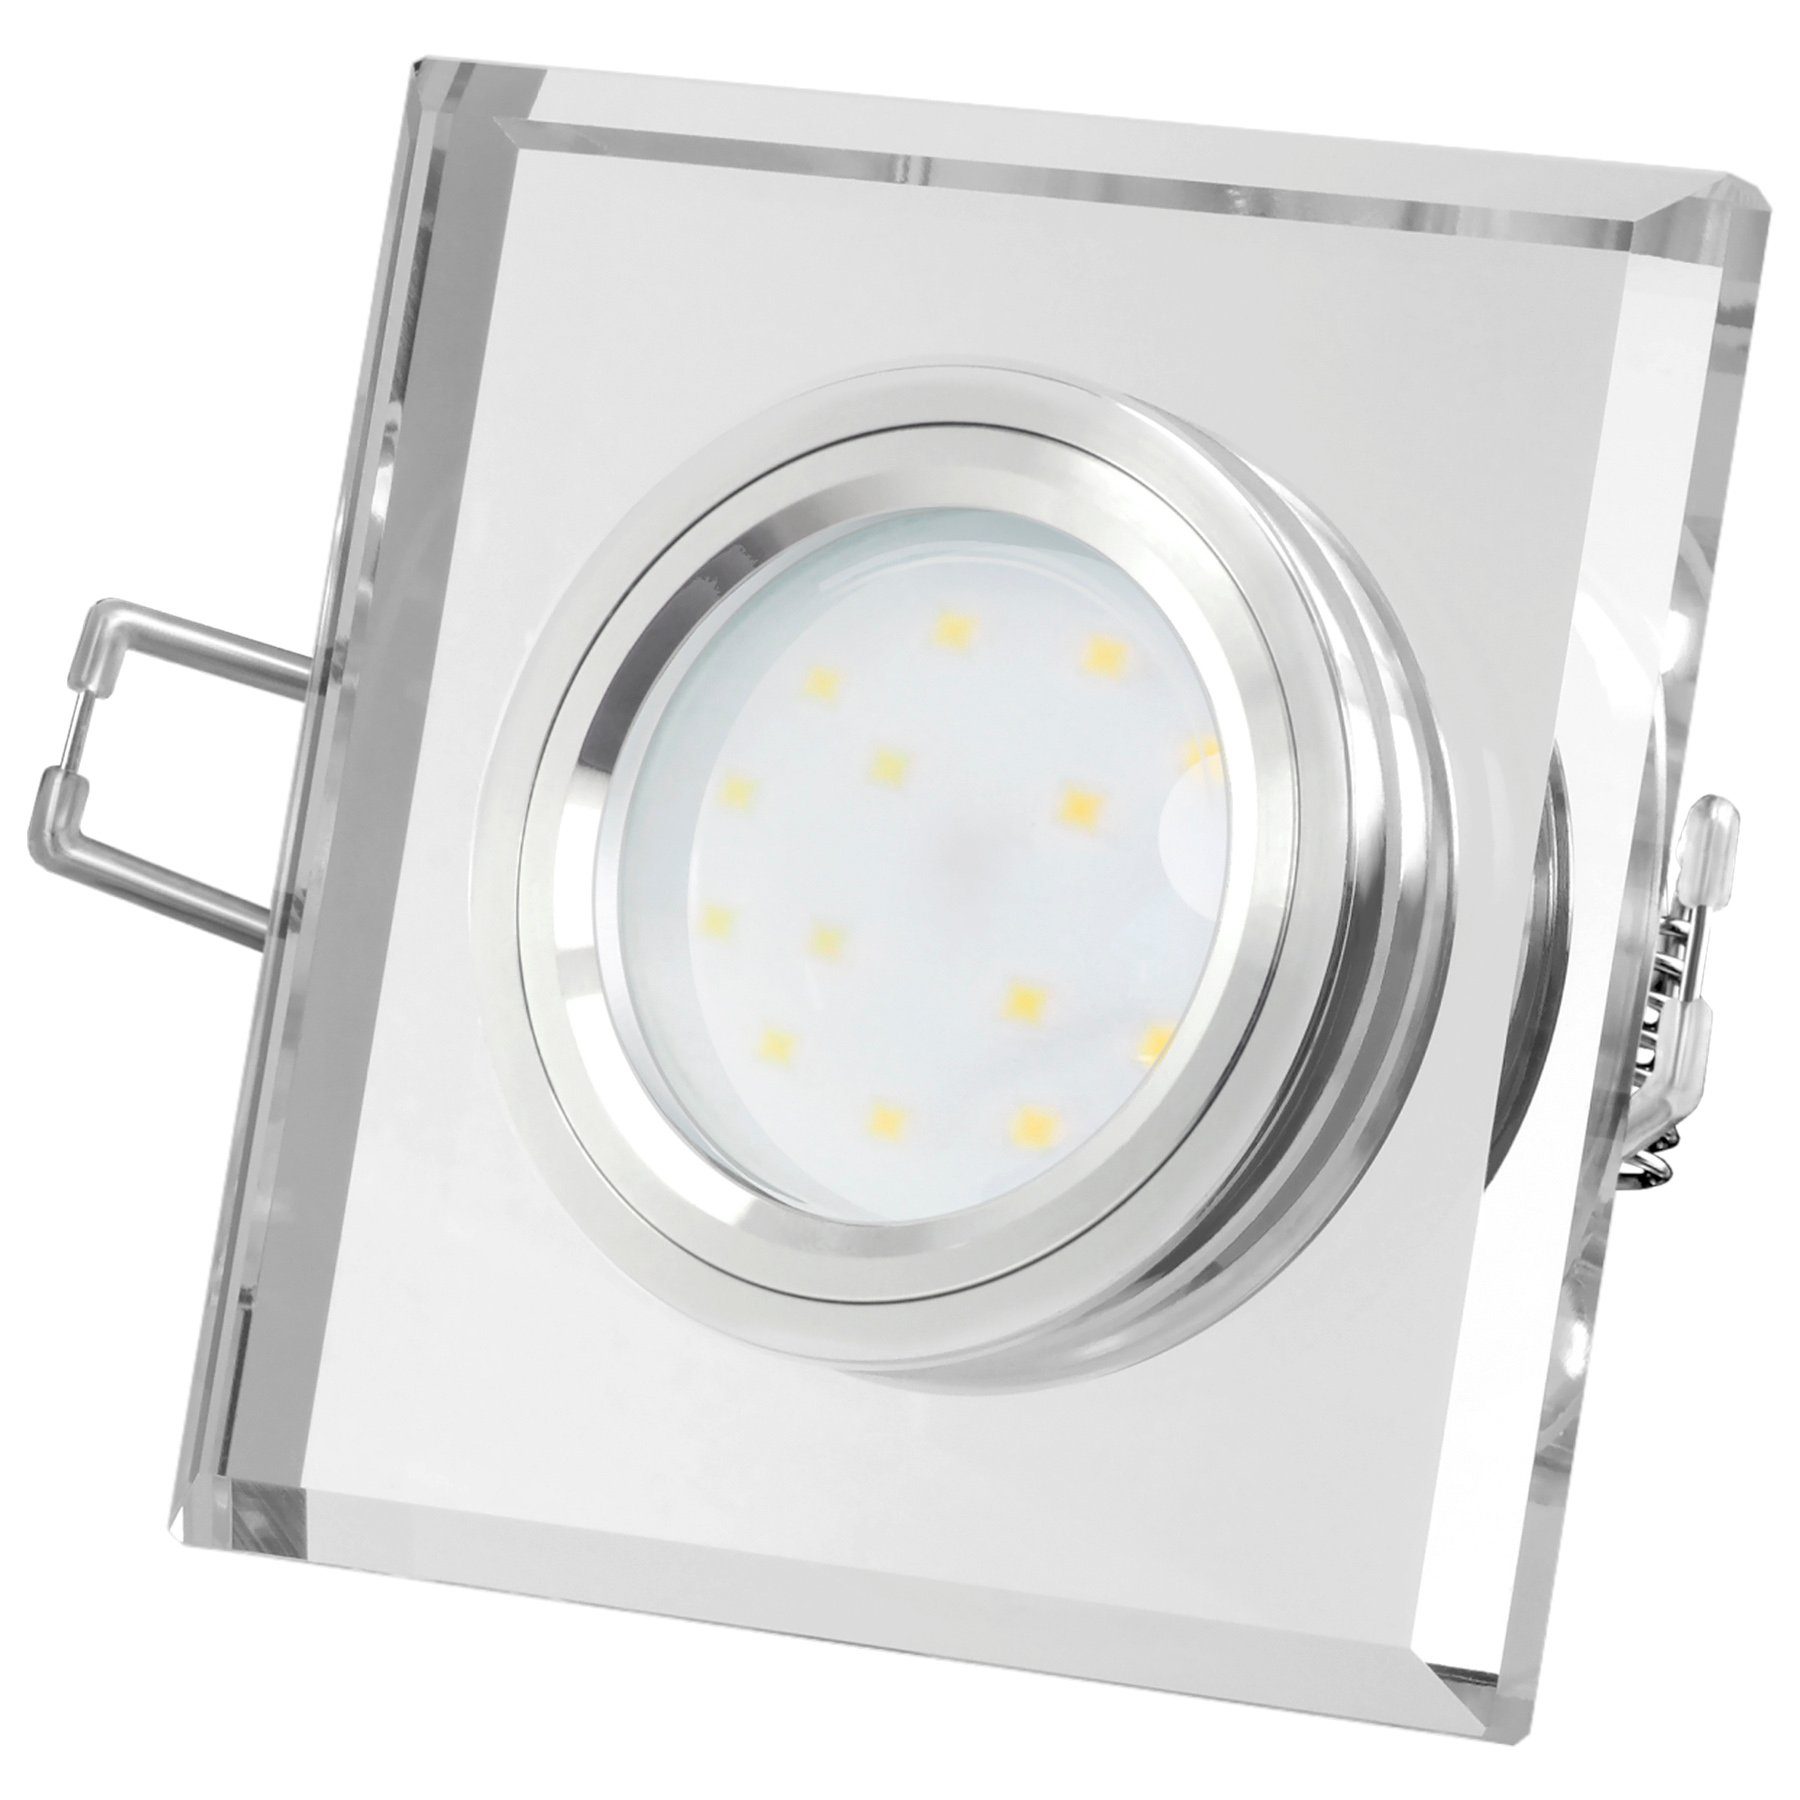 quadratisch LED Einbaustrahler aus klar SSC-LUXon Glas Flacher Einbaustrahler spiegelnd, Neutralweiß Design